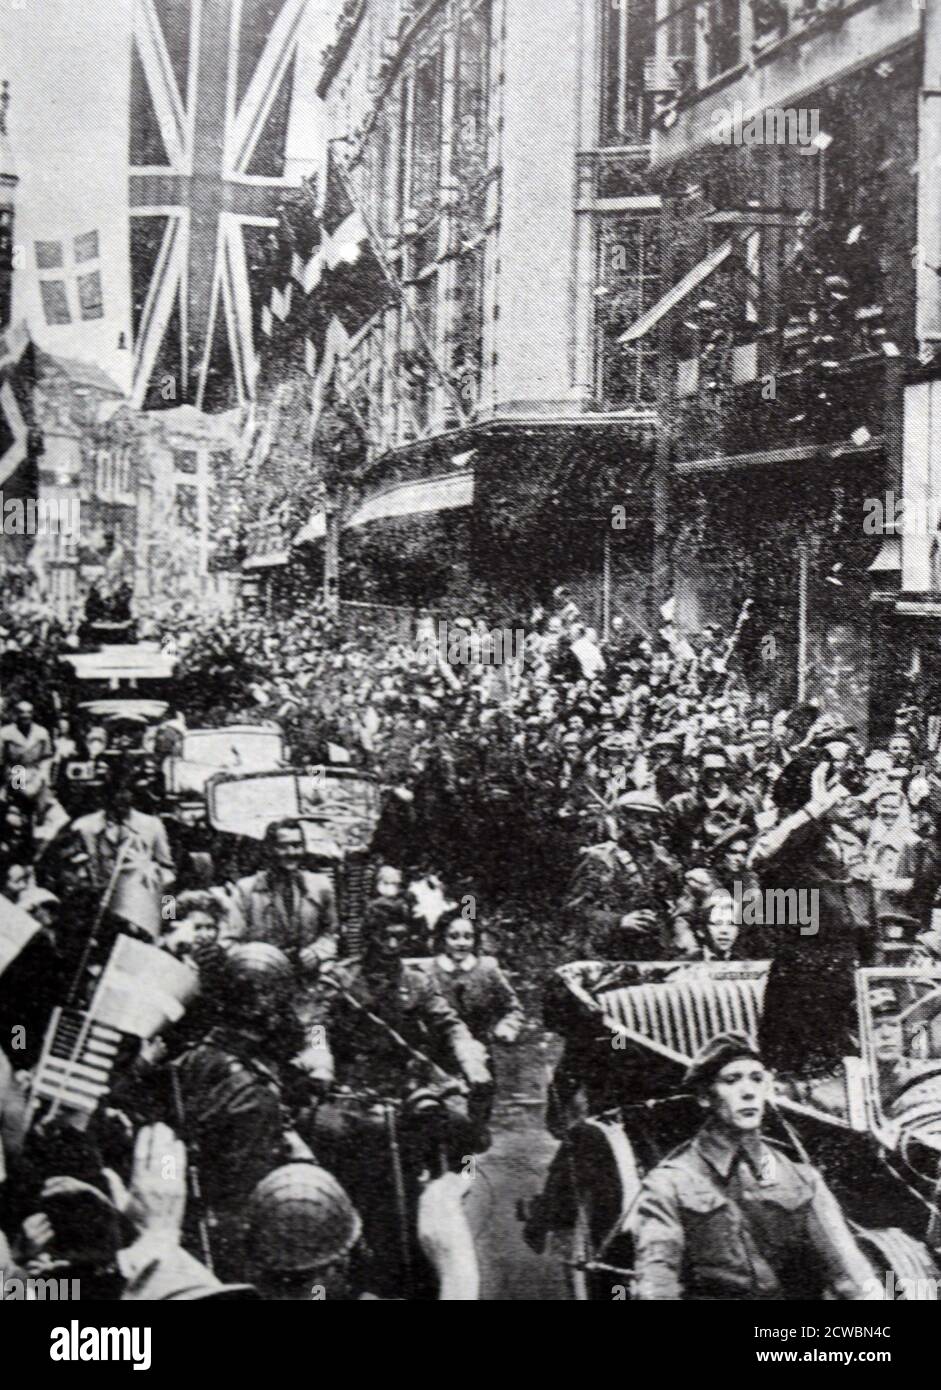 Schwarz-Weiß-Fotografie des Zweiten Weltkriegs (1939-1945) zeigt Bilder ein freies Europa nach der Niederlage Nazi-Deutschlands; der britische General Bernard Montgomery (1887-1976) wird in Kopenhagen gefeiert, als er in einem Auto durch die Straßen fährt, das den Menschen winkt. Stockfoto